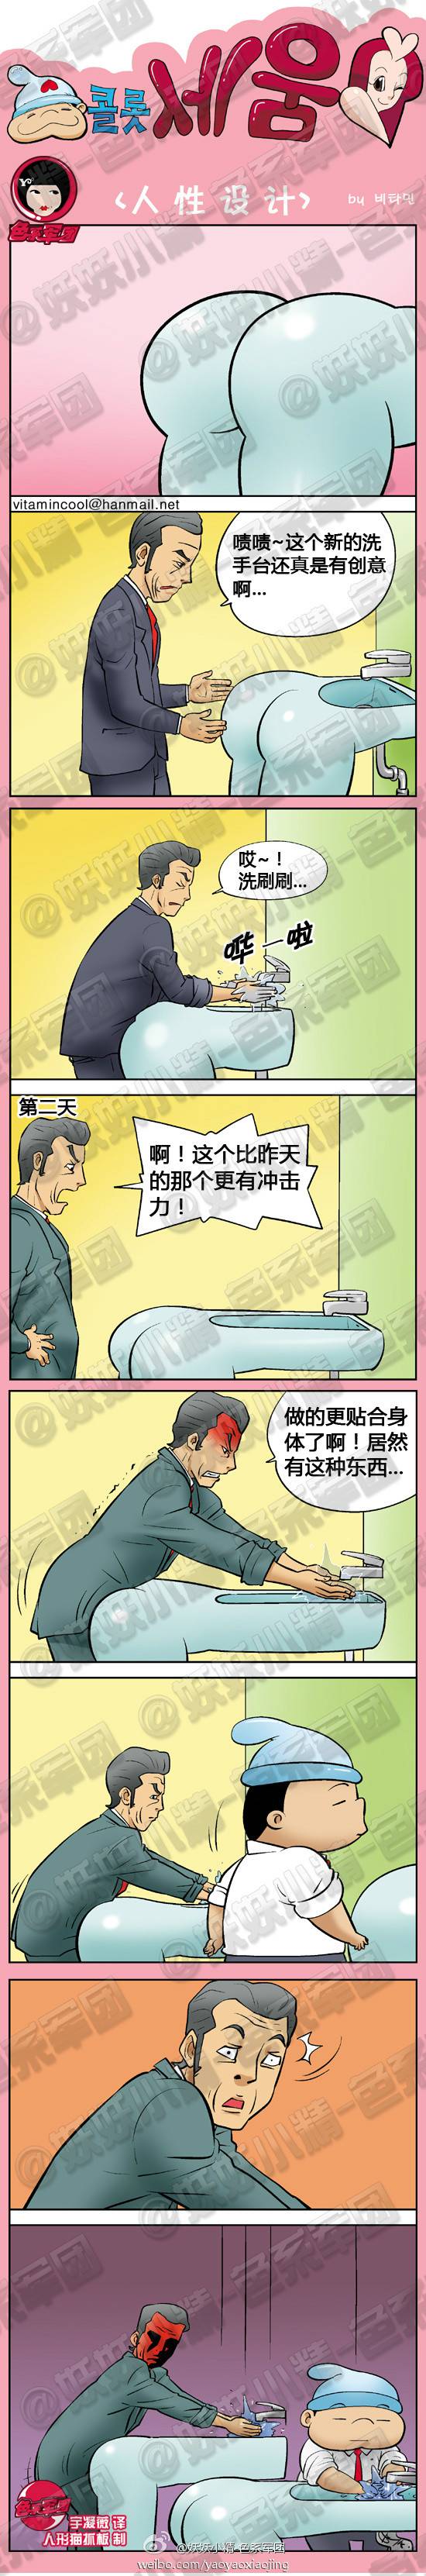 邪恶漫画爆笑囧图第305刊：美女诱惑